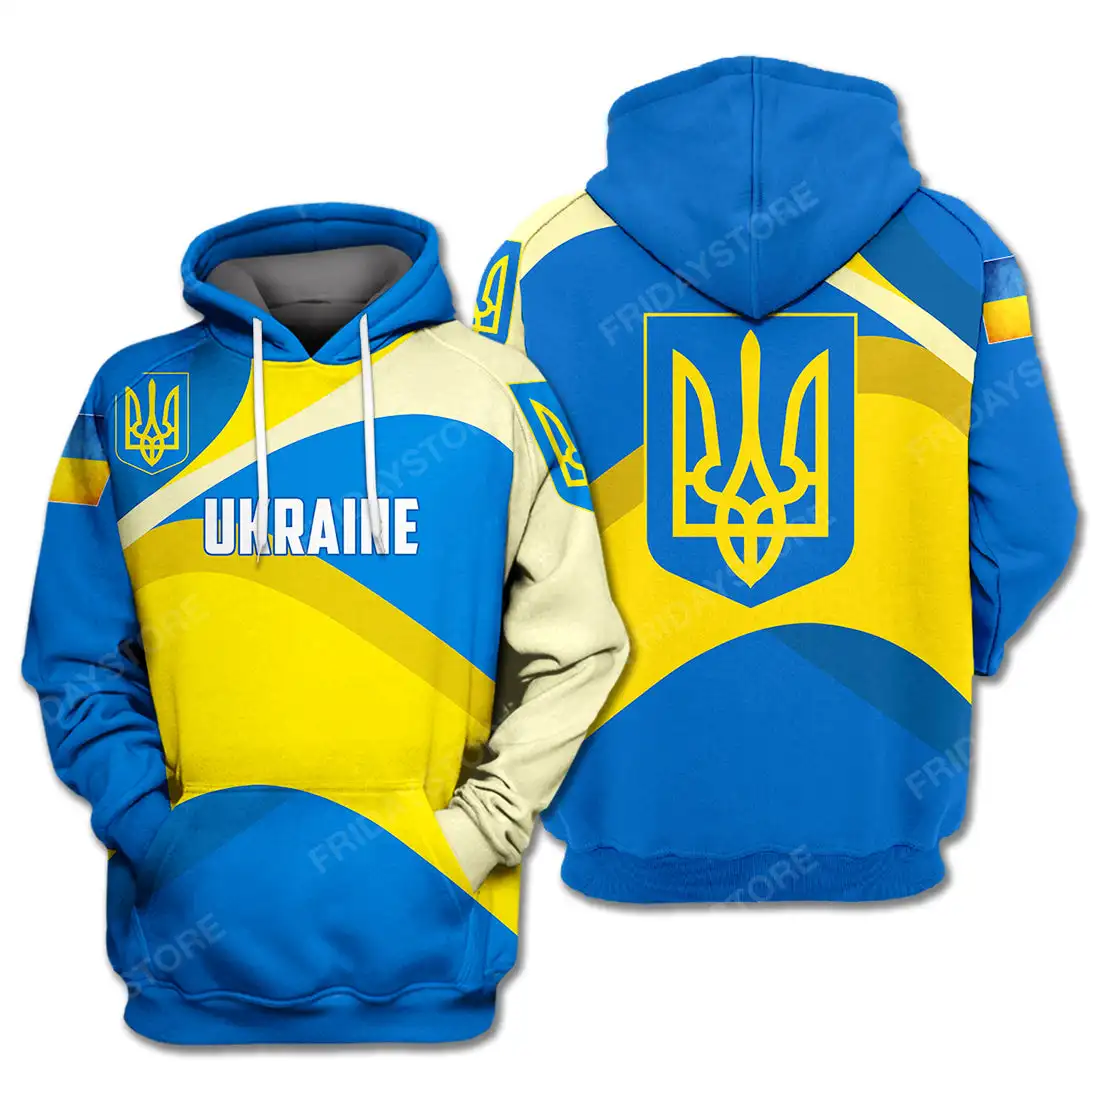 Украинская футболка, значок с флагом Украины, сине-желтая толстовка, украинская толстовка на молнии, мужская одежда